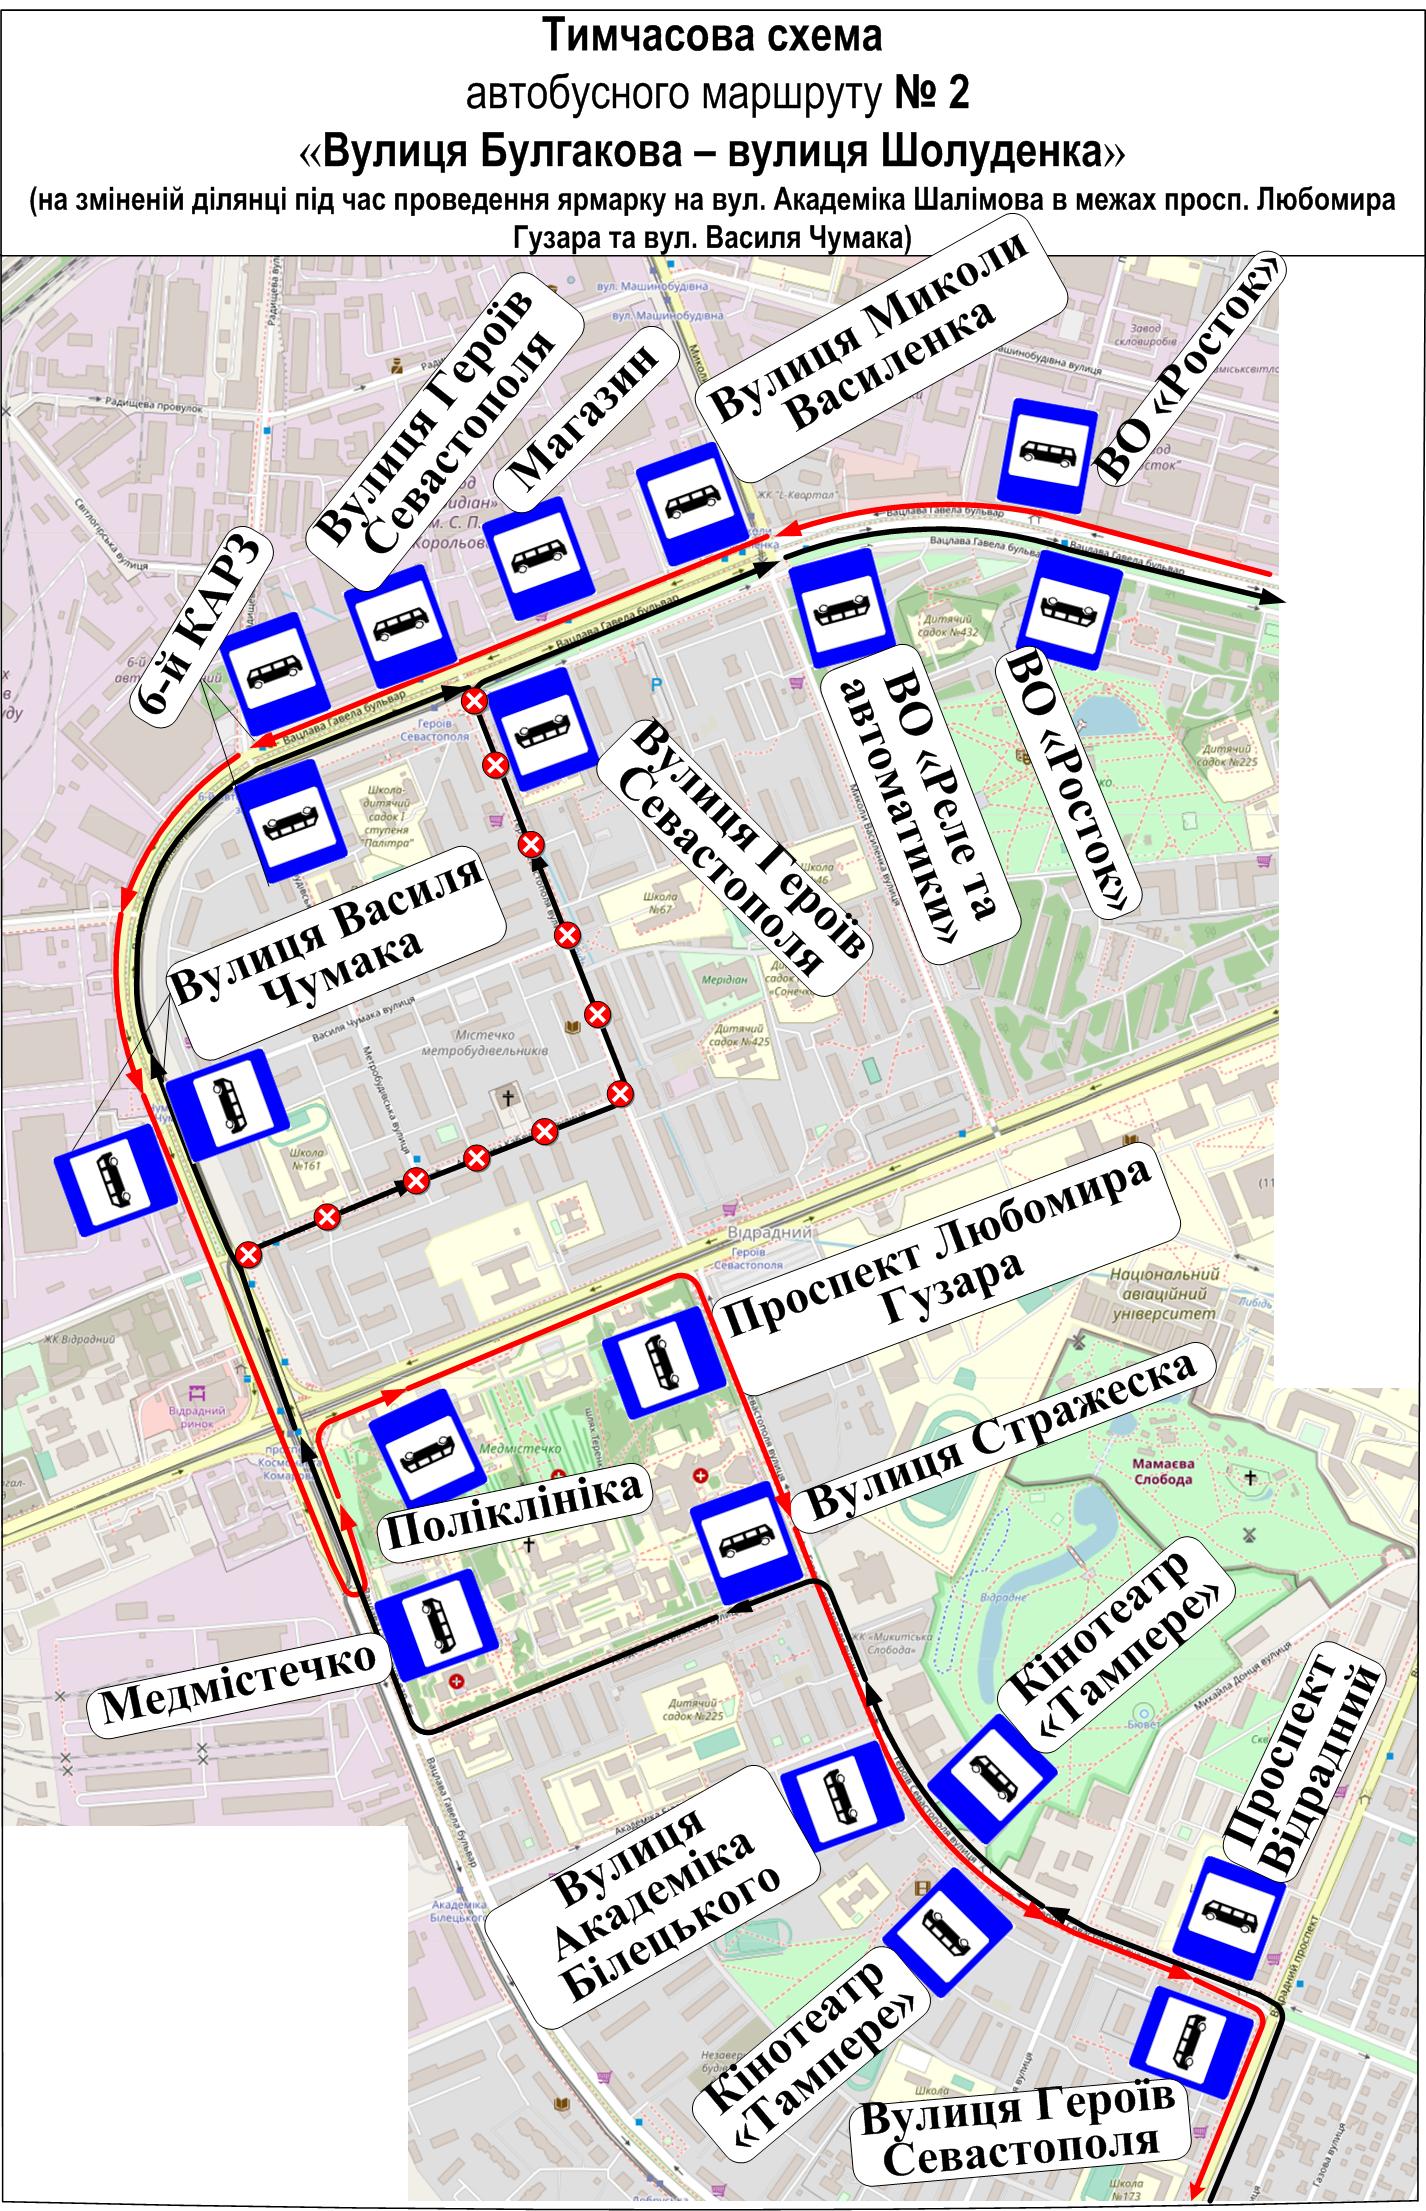 Тимчасова схема руху автобусу № 2 на карті